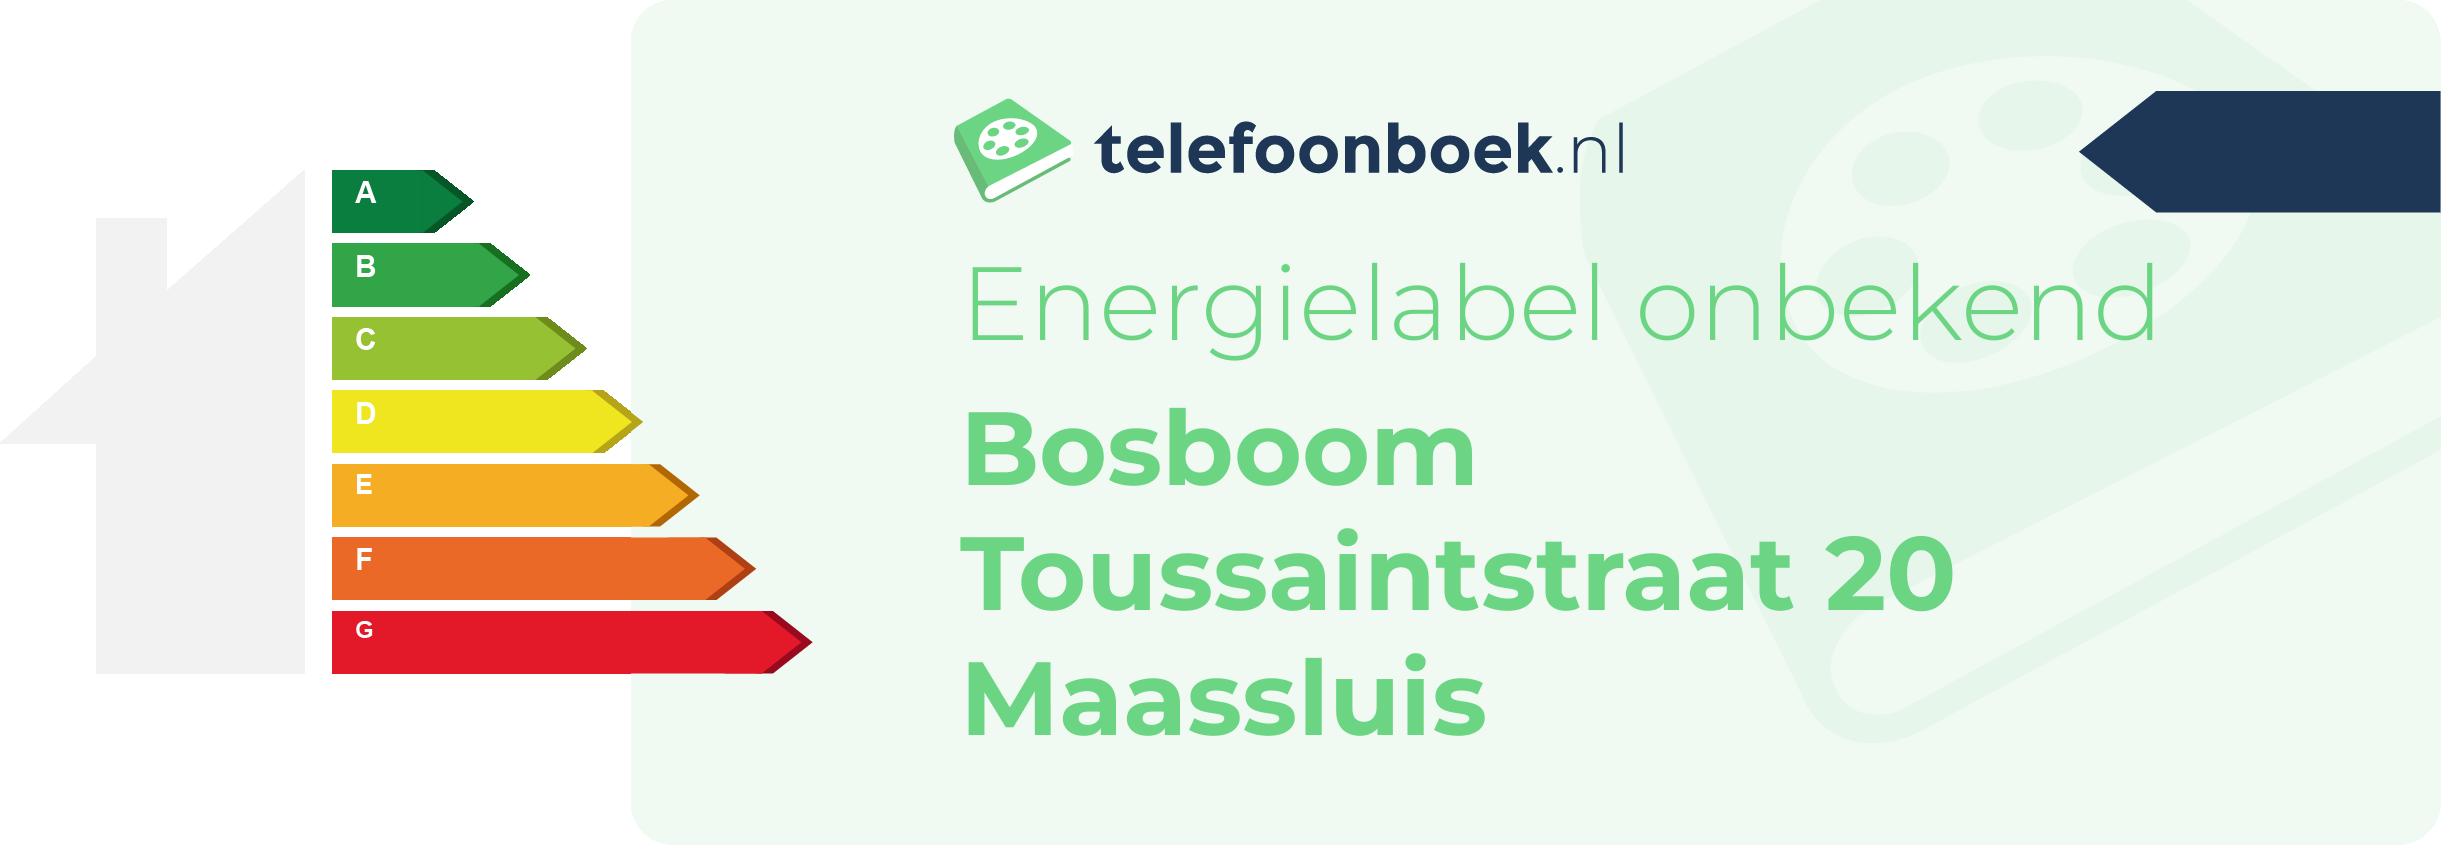 Energielabel Bosboom Toussaintstraat 20 Maassluis